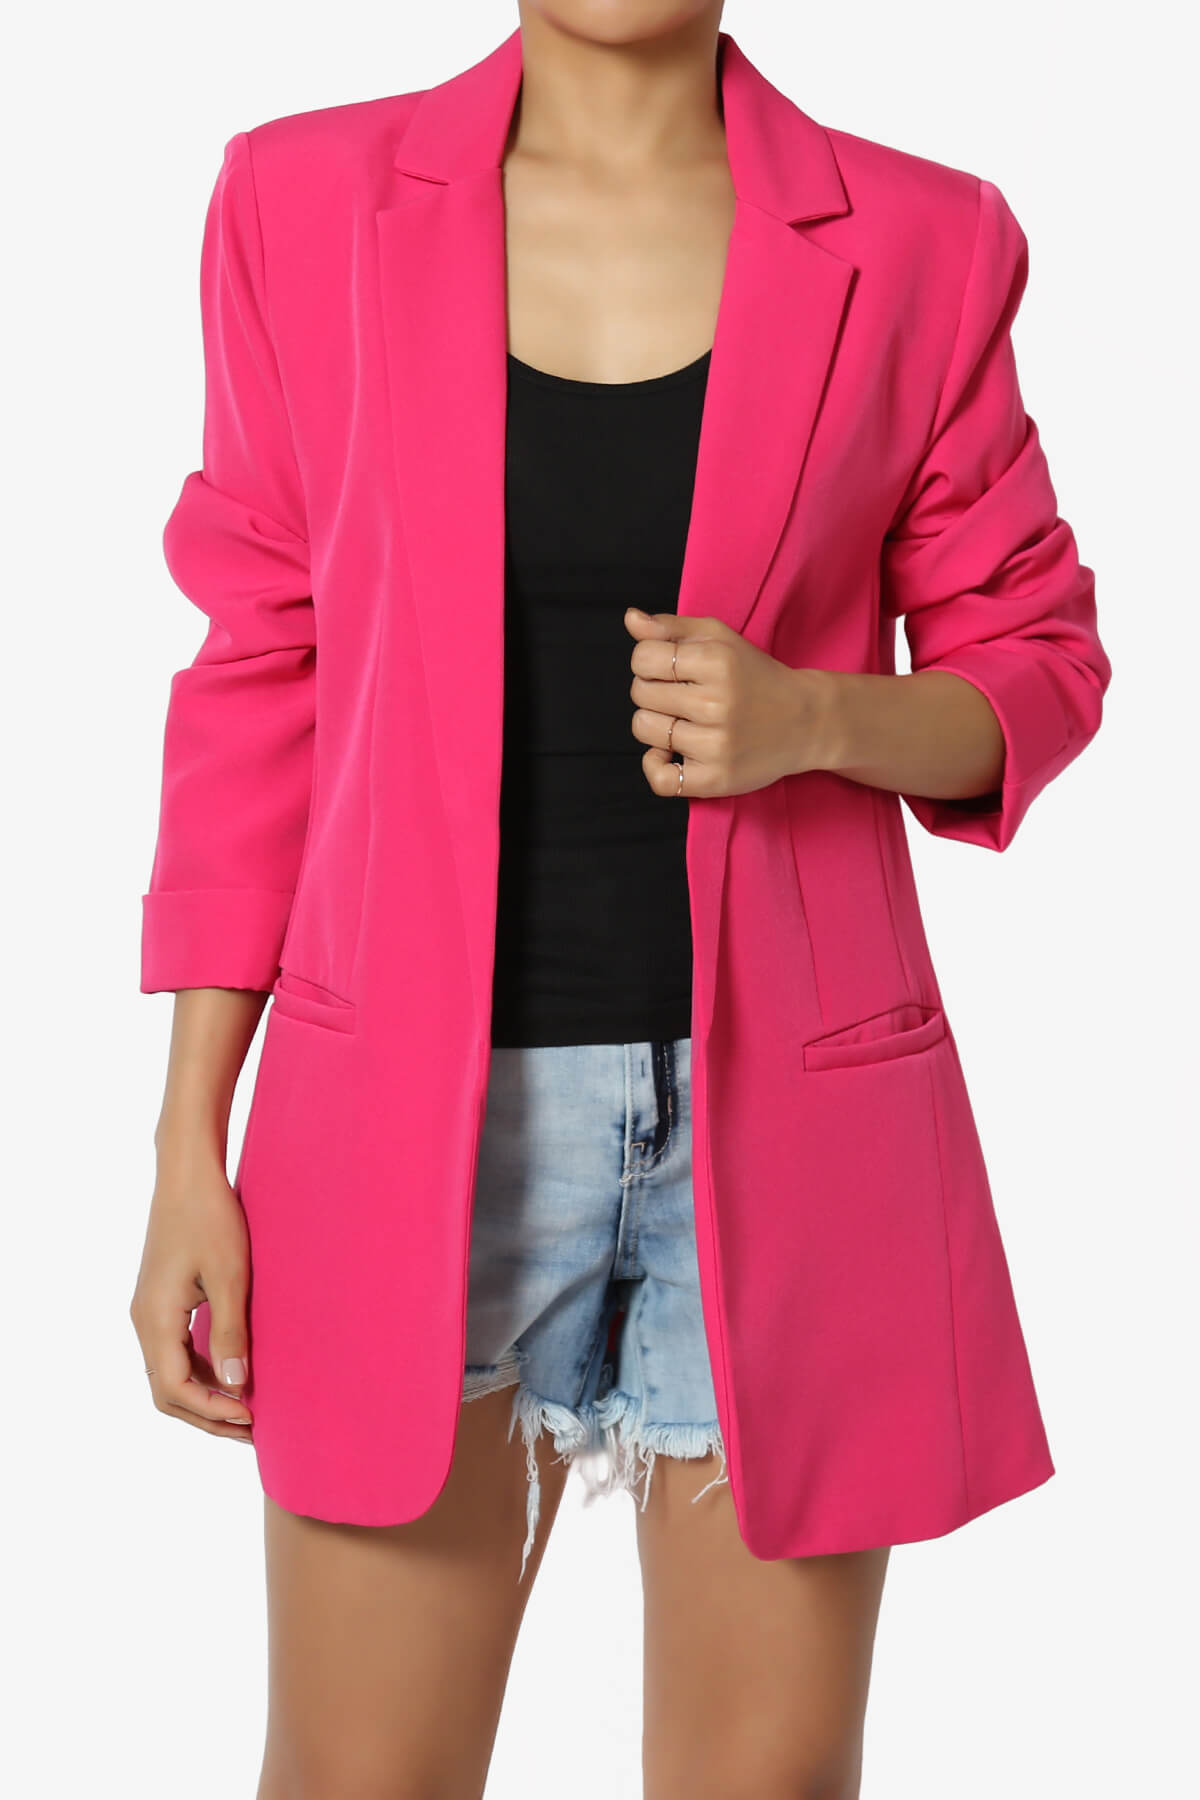 A woman wearing a pink blazer